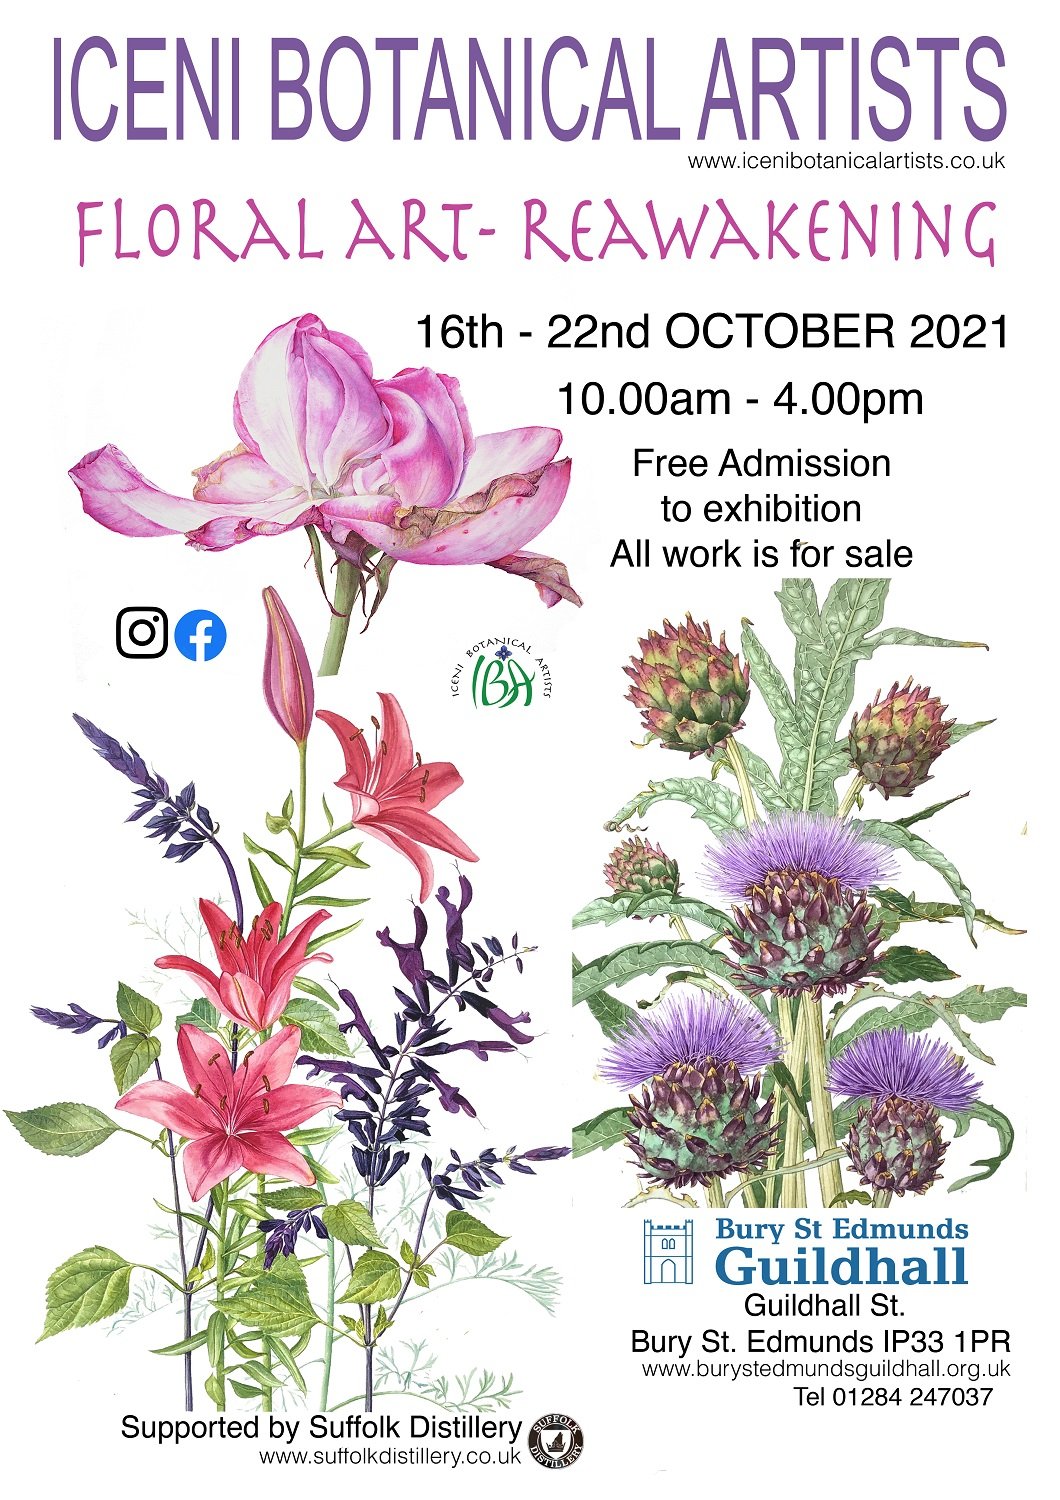 Floral Art - Reawakening 2021: Lockdown through the eyes of the botanical artist